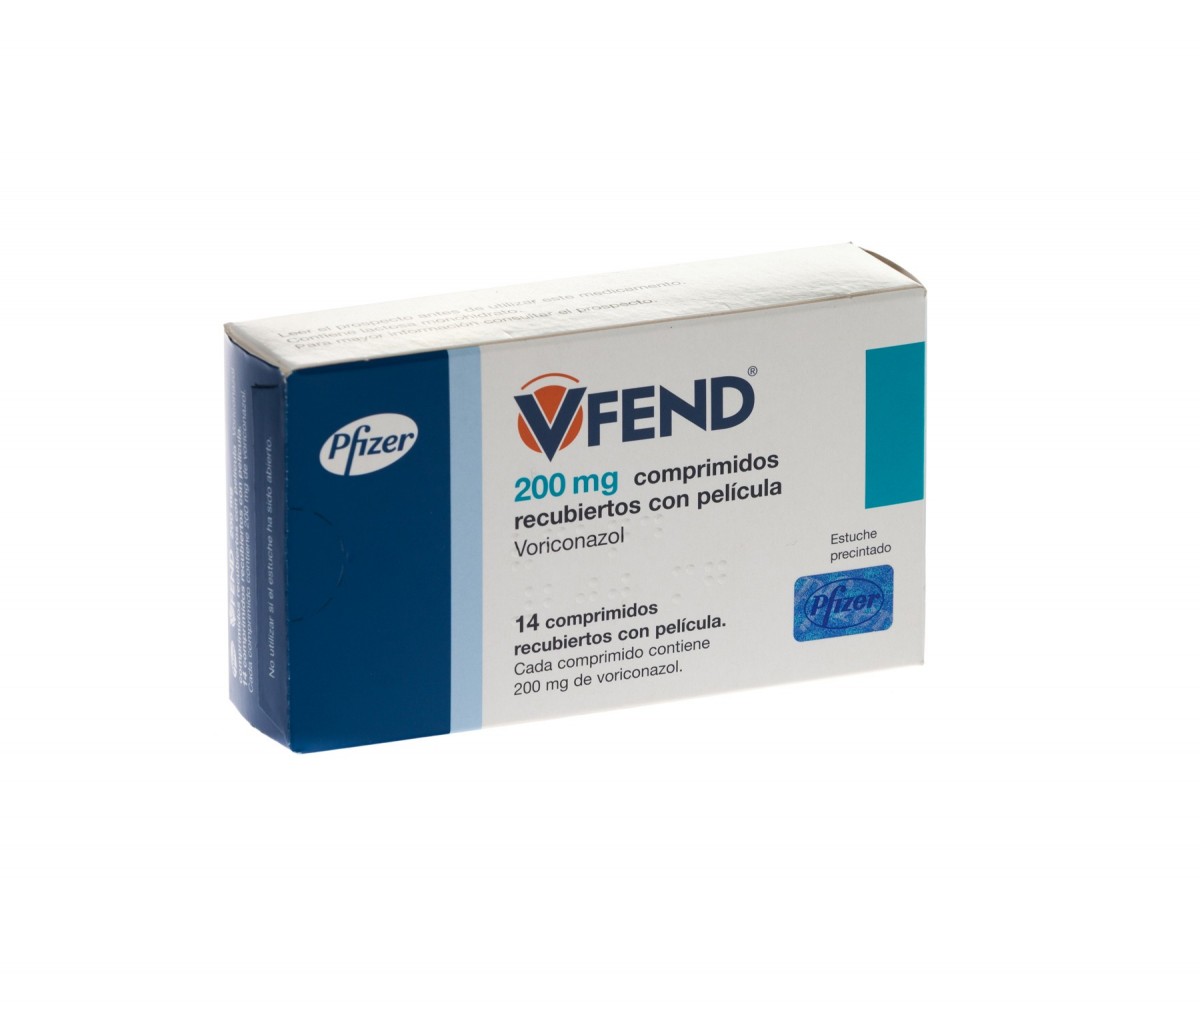 VFEND 200 mg COMPRIMIDOS RECUBIERTOS CON PELICULA, 14 comprimidos fotografía del envase.